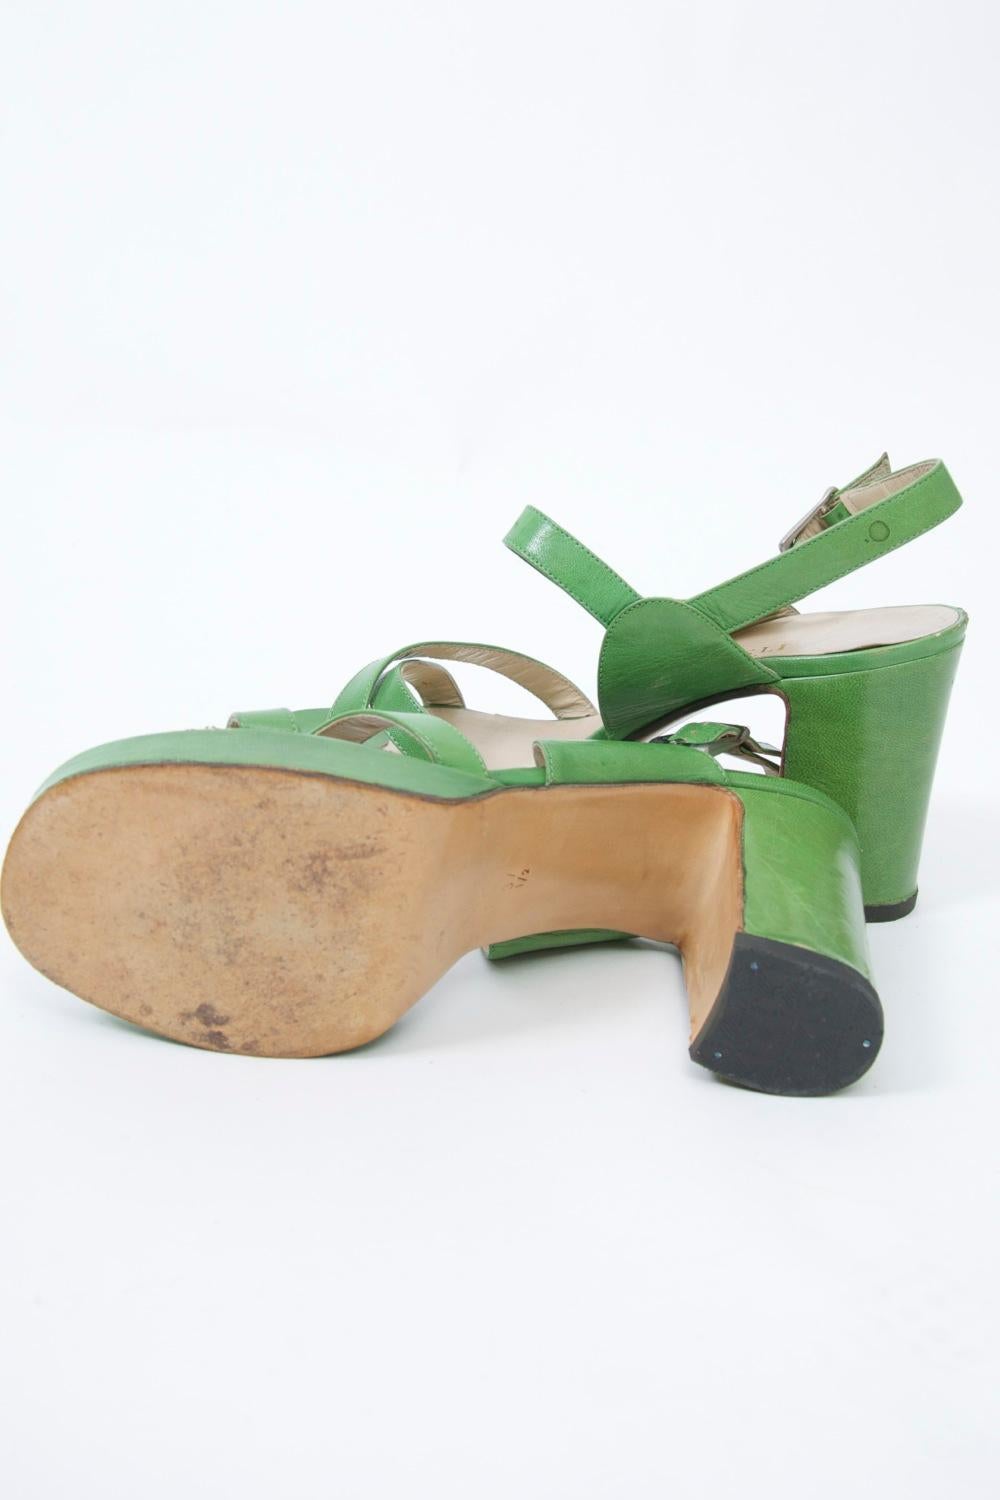 Gray 1970s Bruno Magli Platform Sandals For Sale